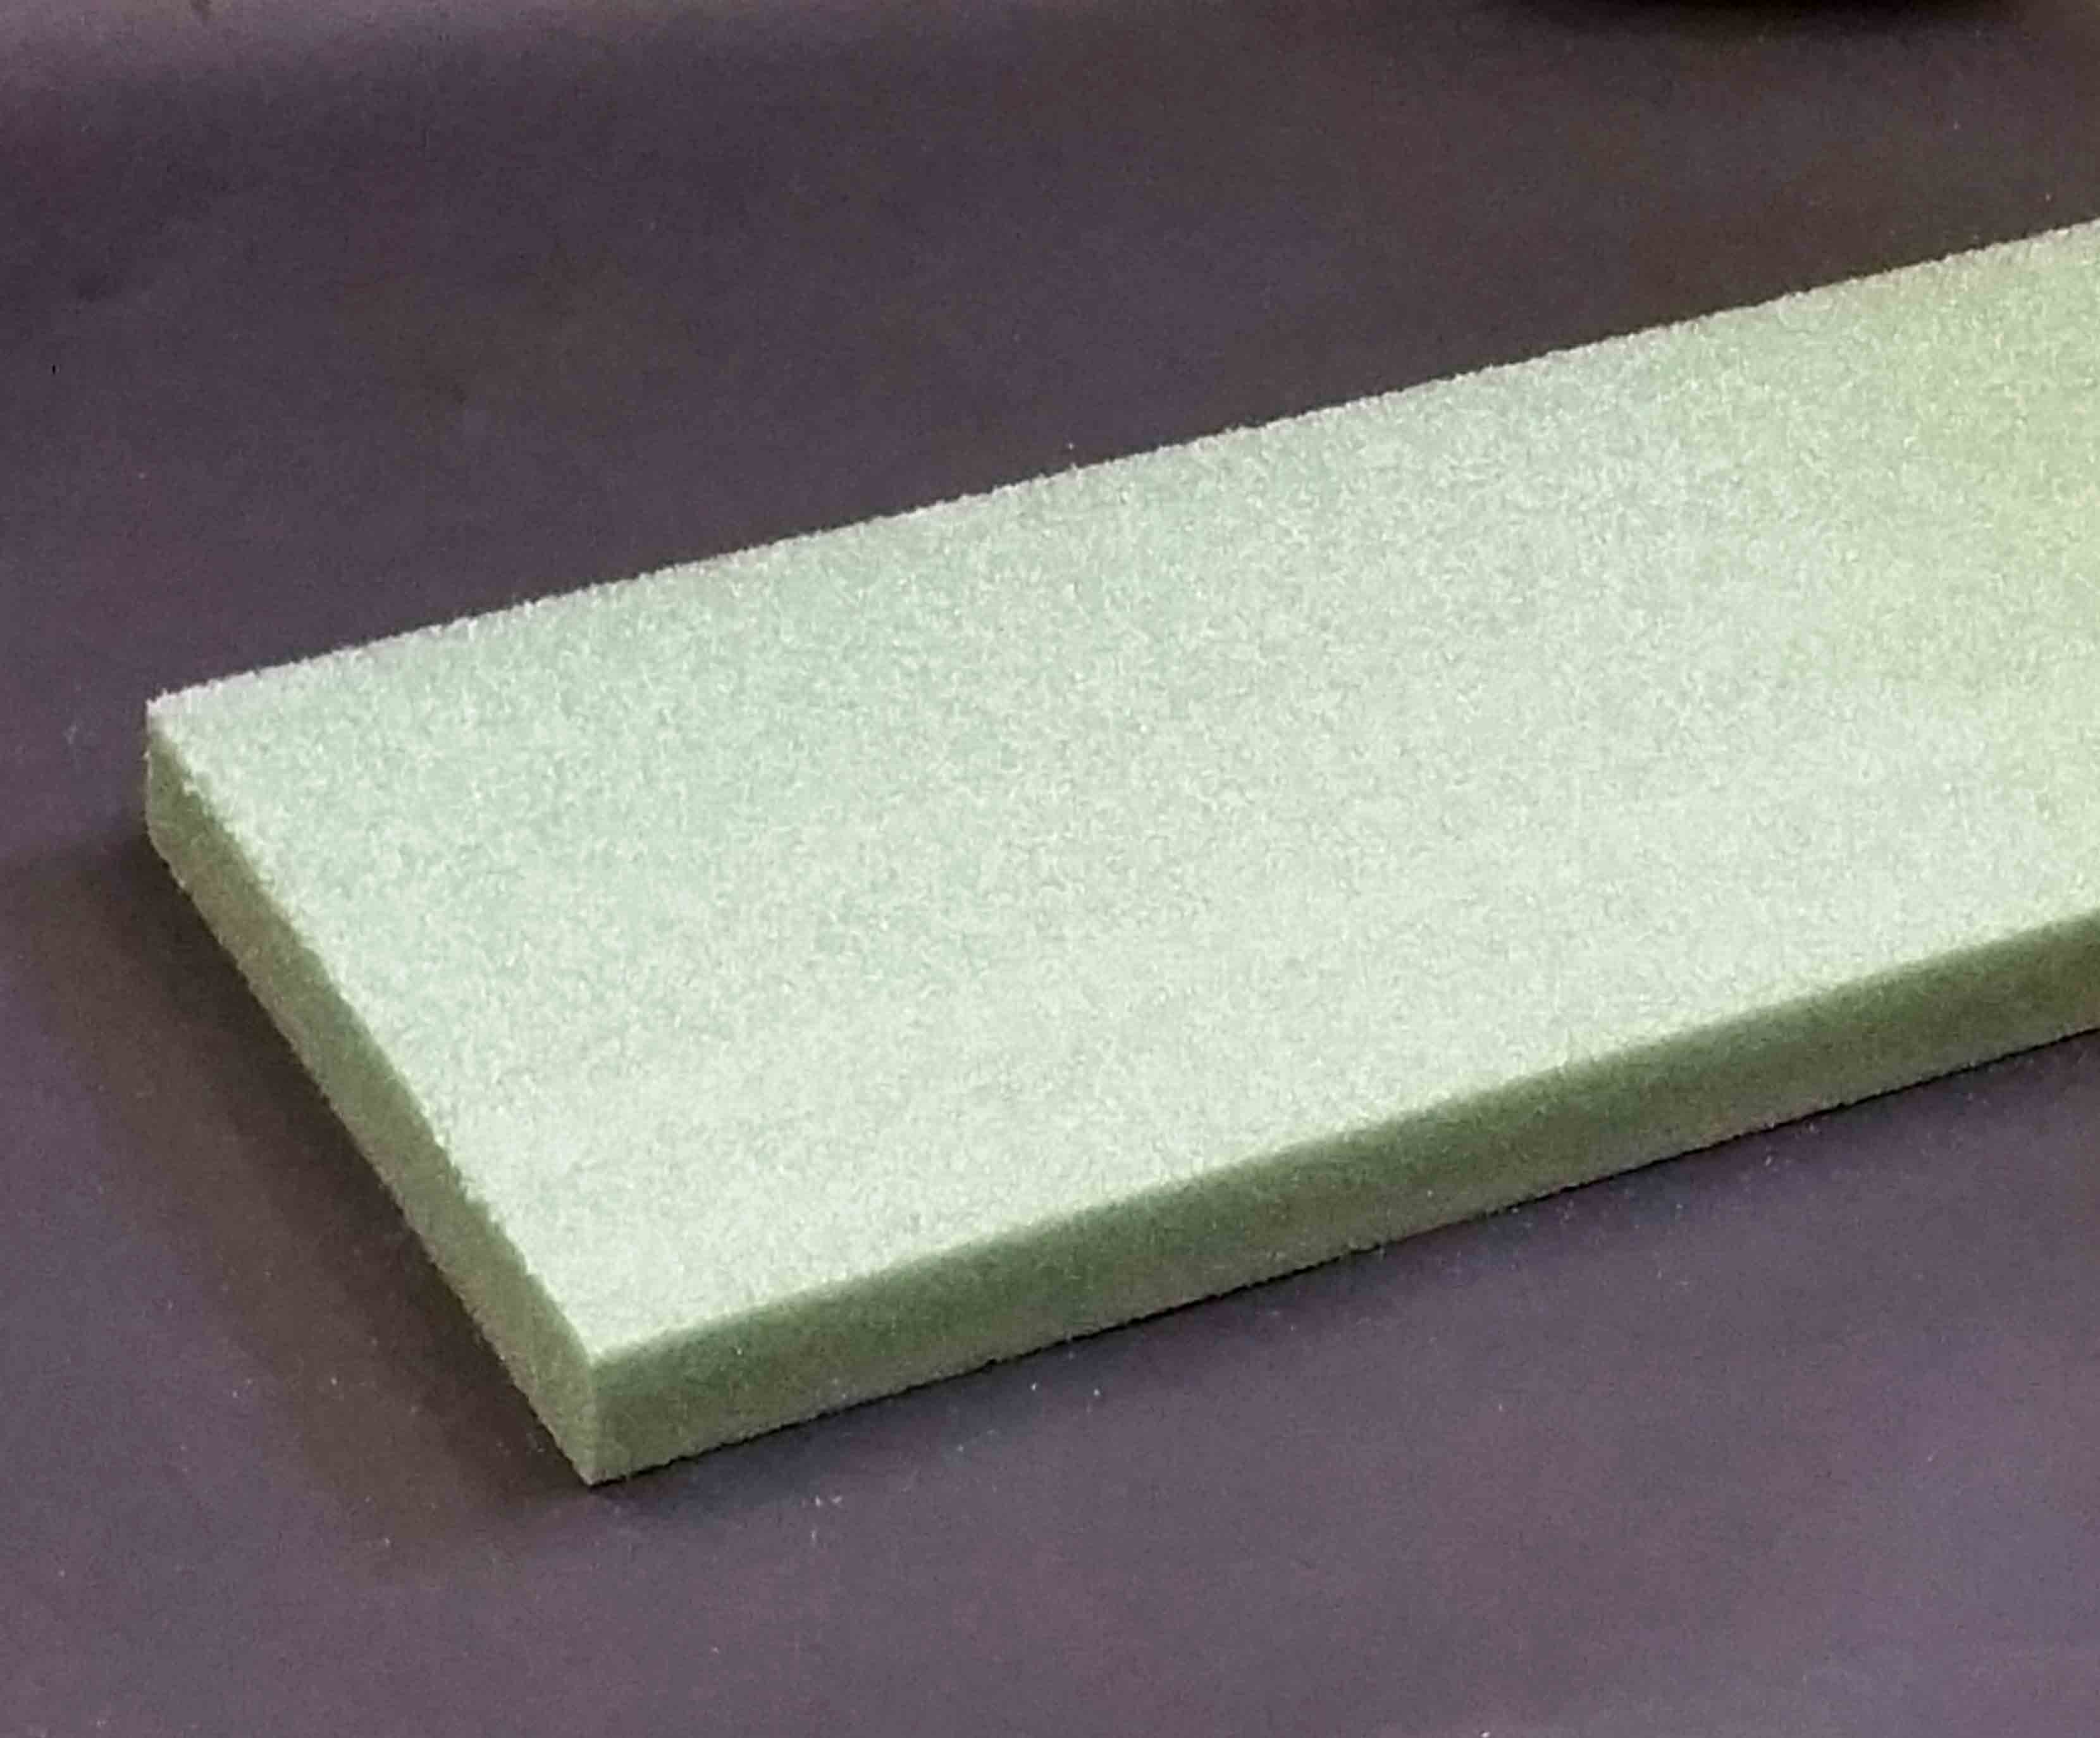 657 - 2" Green  Styrofoam Boards - 13.15 ea, 12.85/20